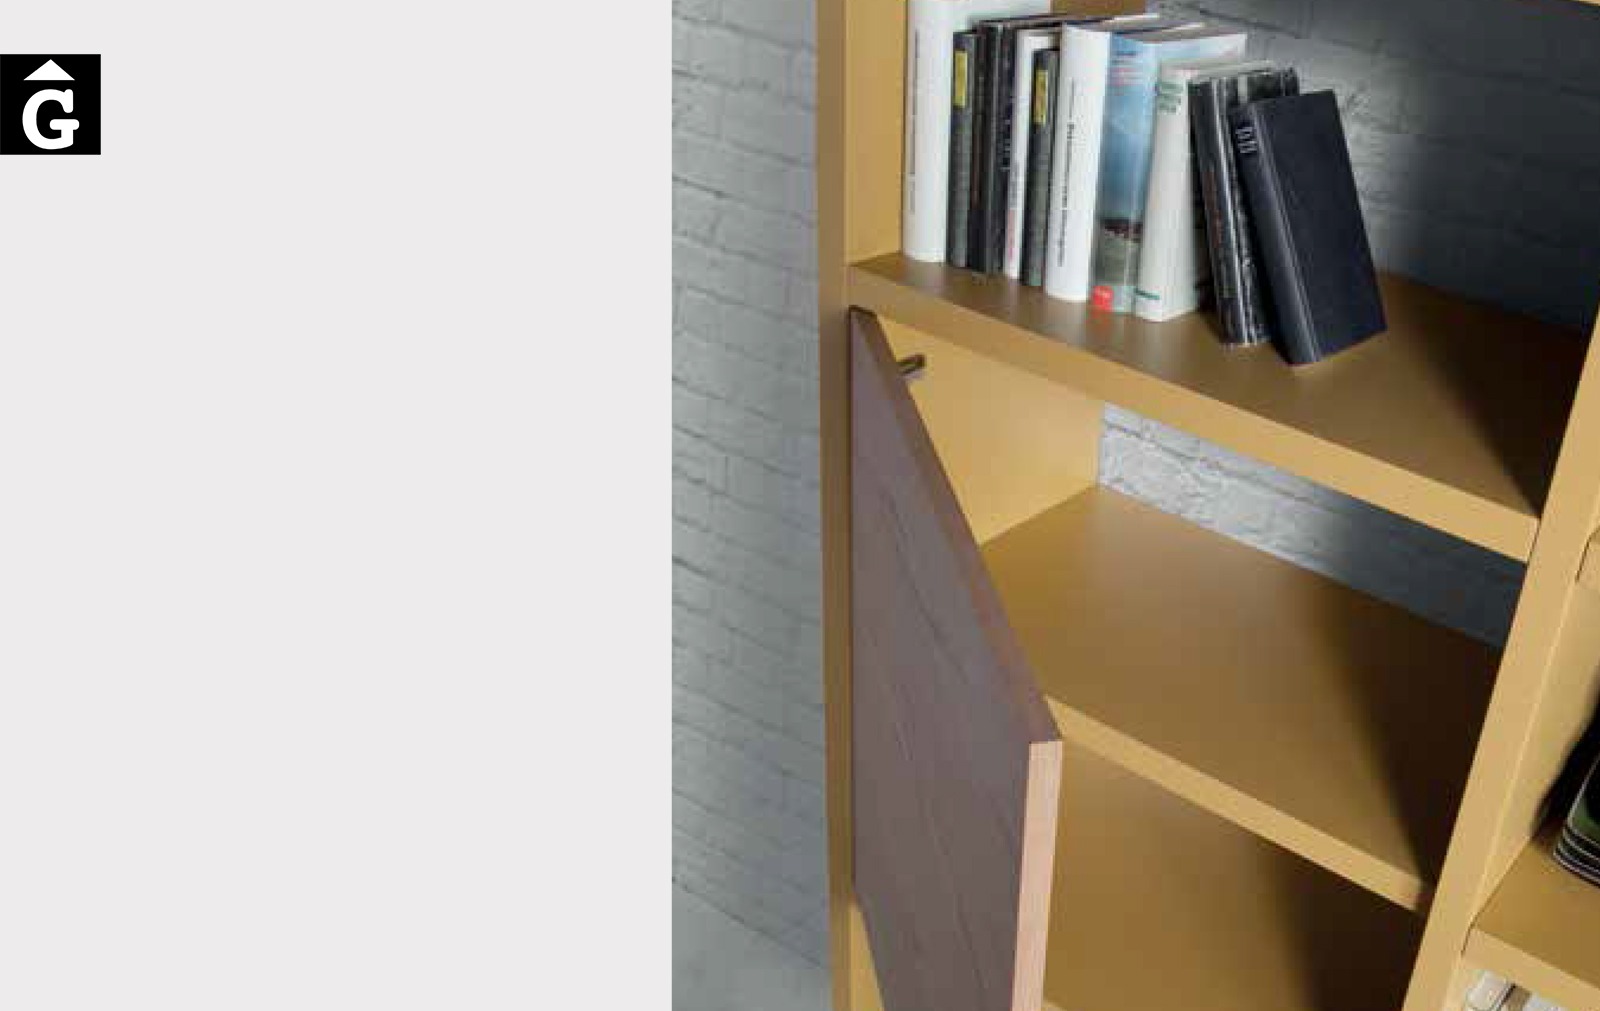 Detall llibreria Loyra muebles by mobles Gifreu Idees per la llar moble de qualitat